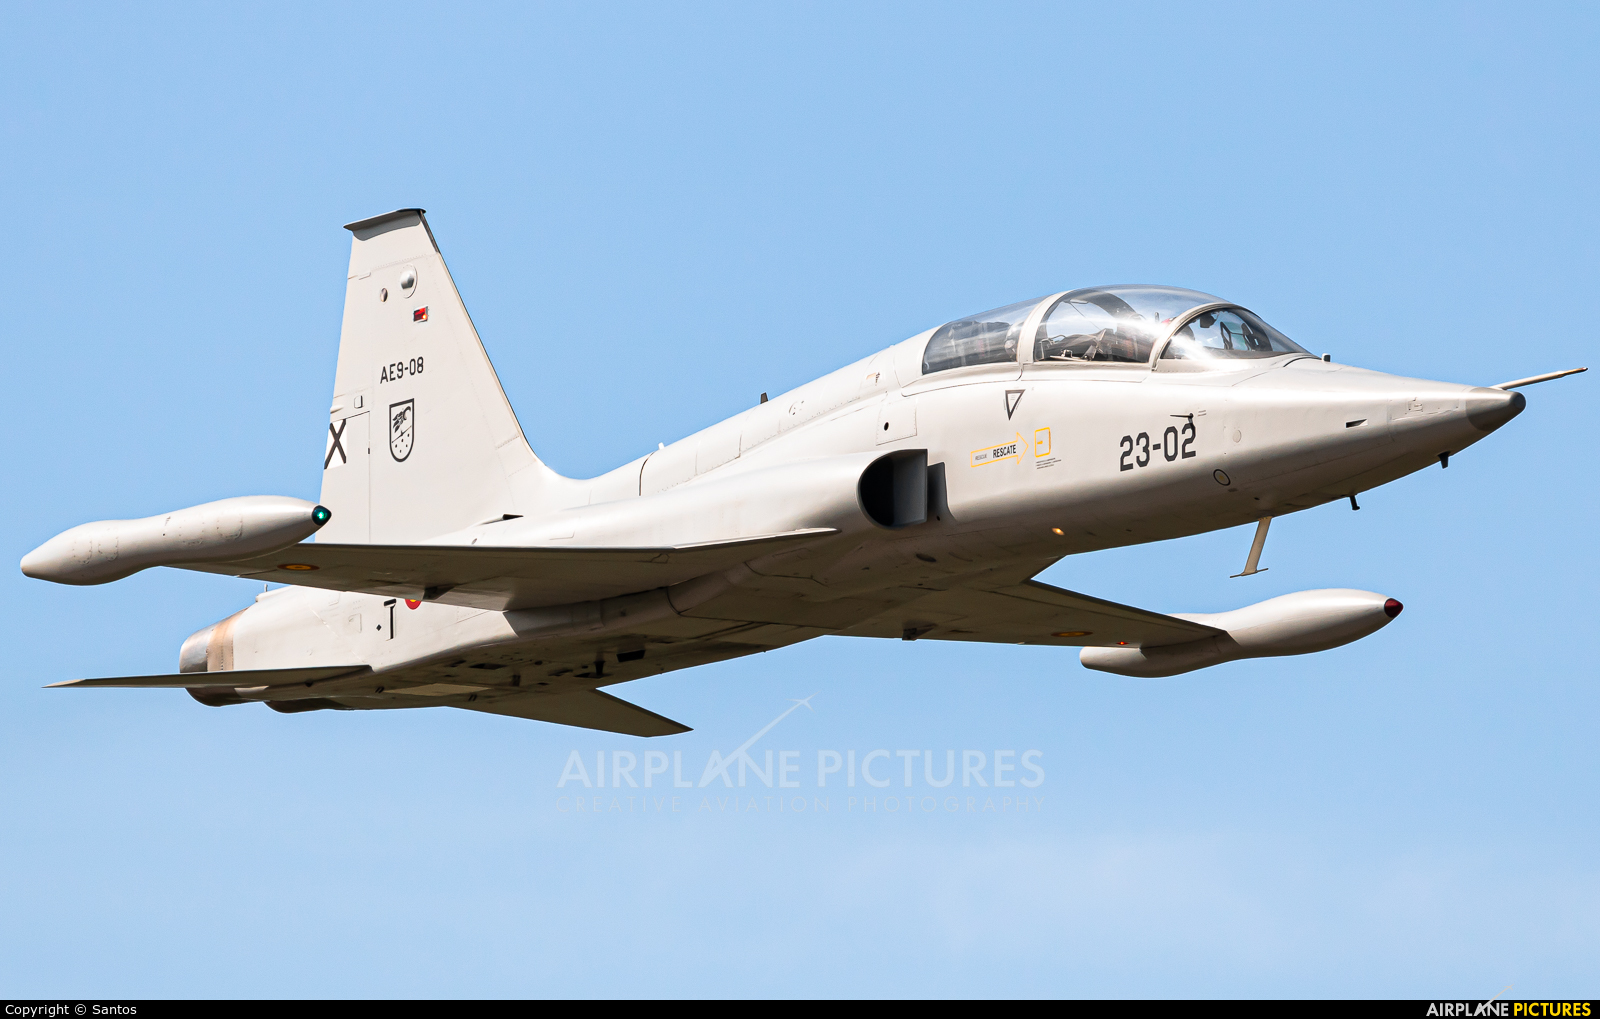 Spain - Air Force AE.9-08 aircraft at Tablada